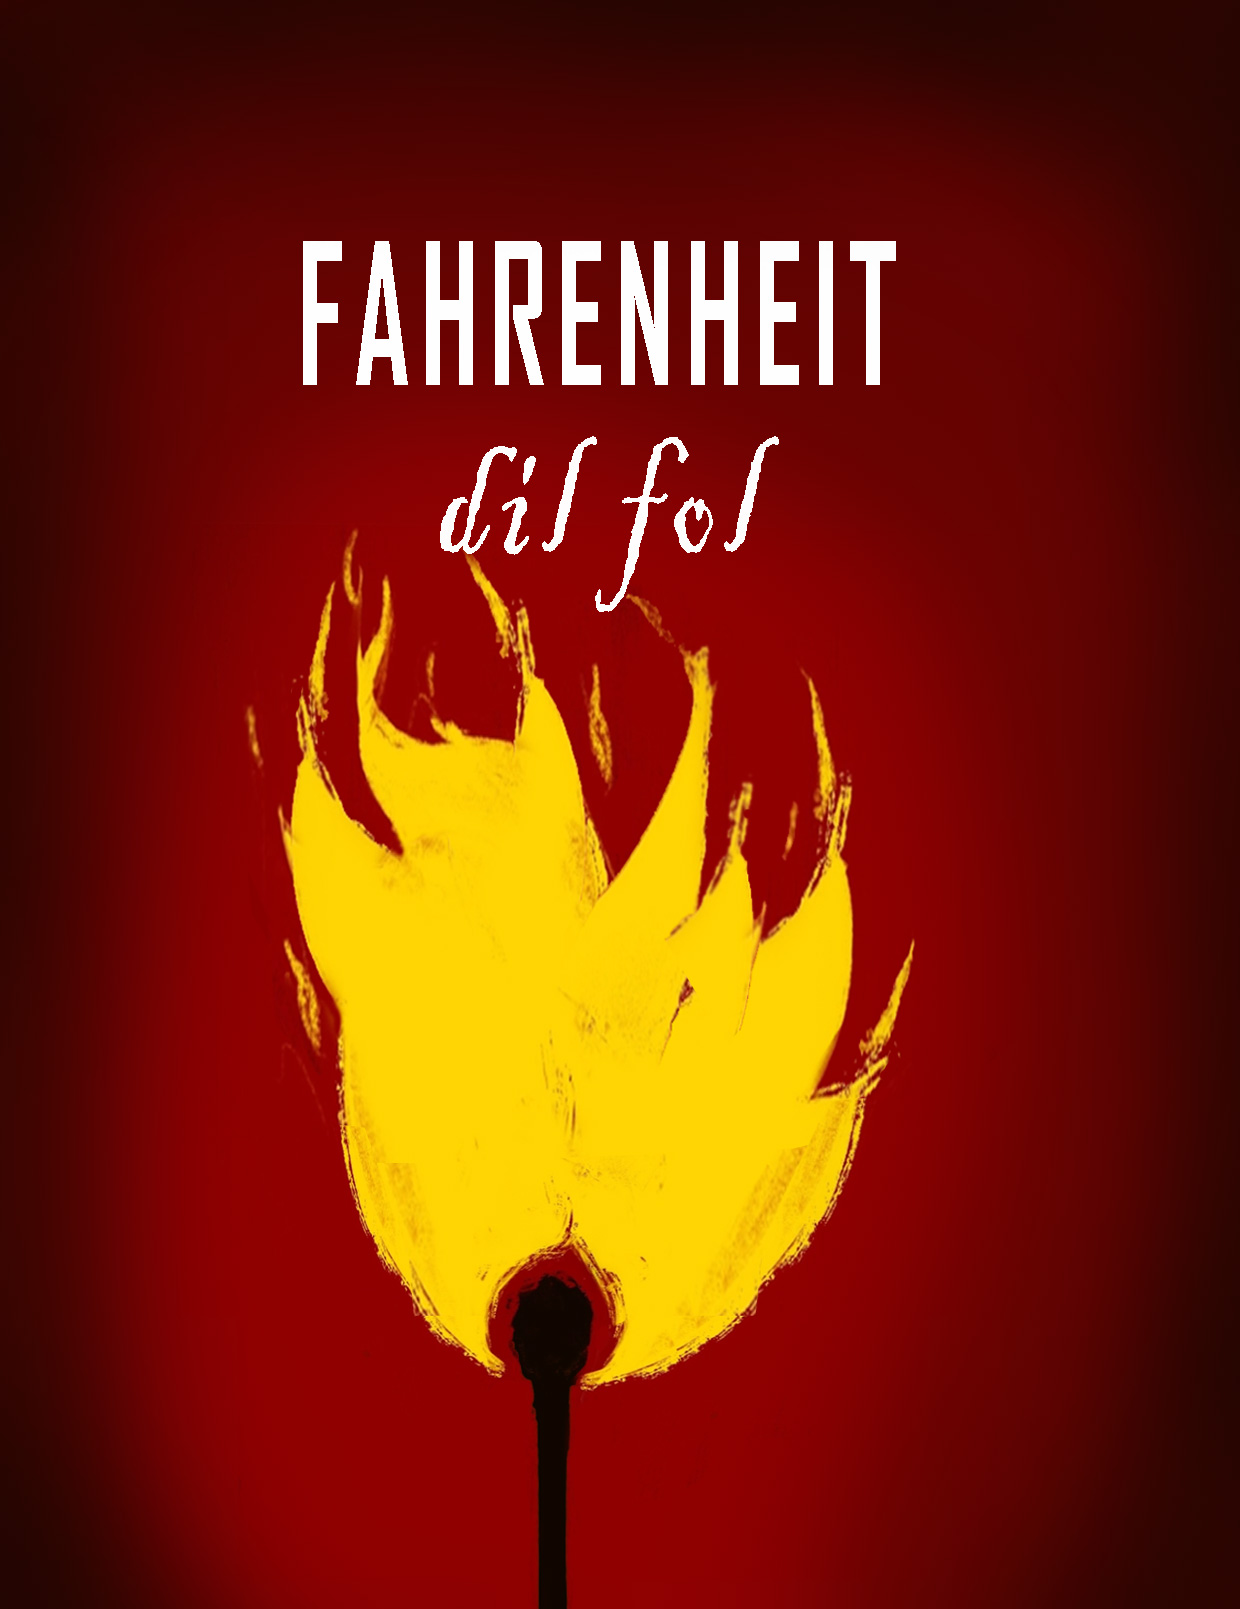 Fahrenheit dil fol. A Ferrara un progetto teatrale dedicato alla memoria popolare